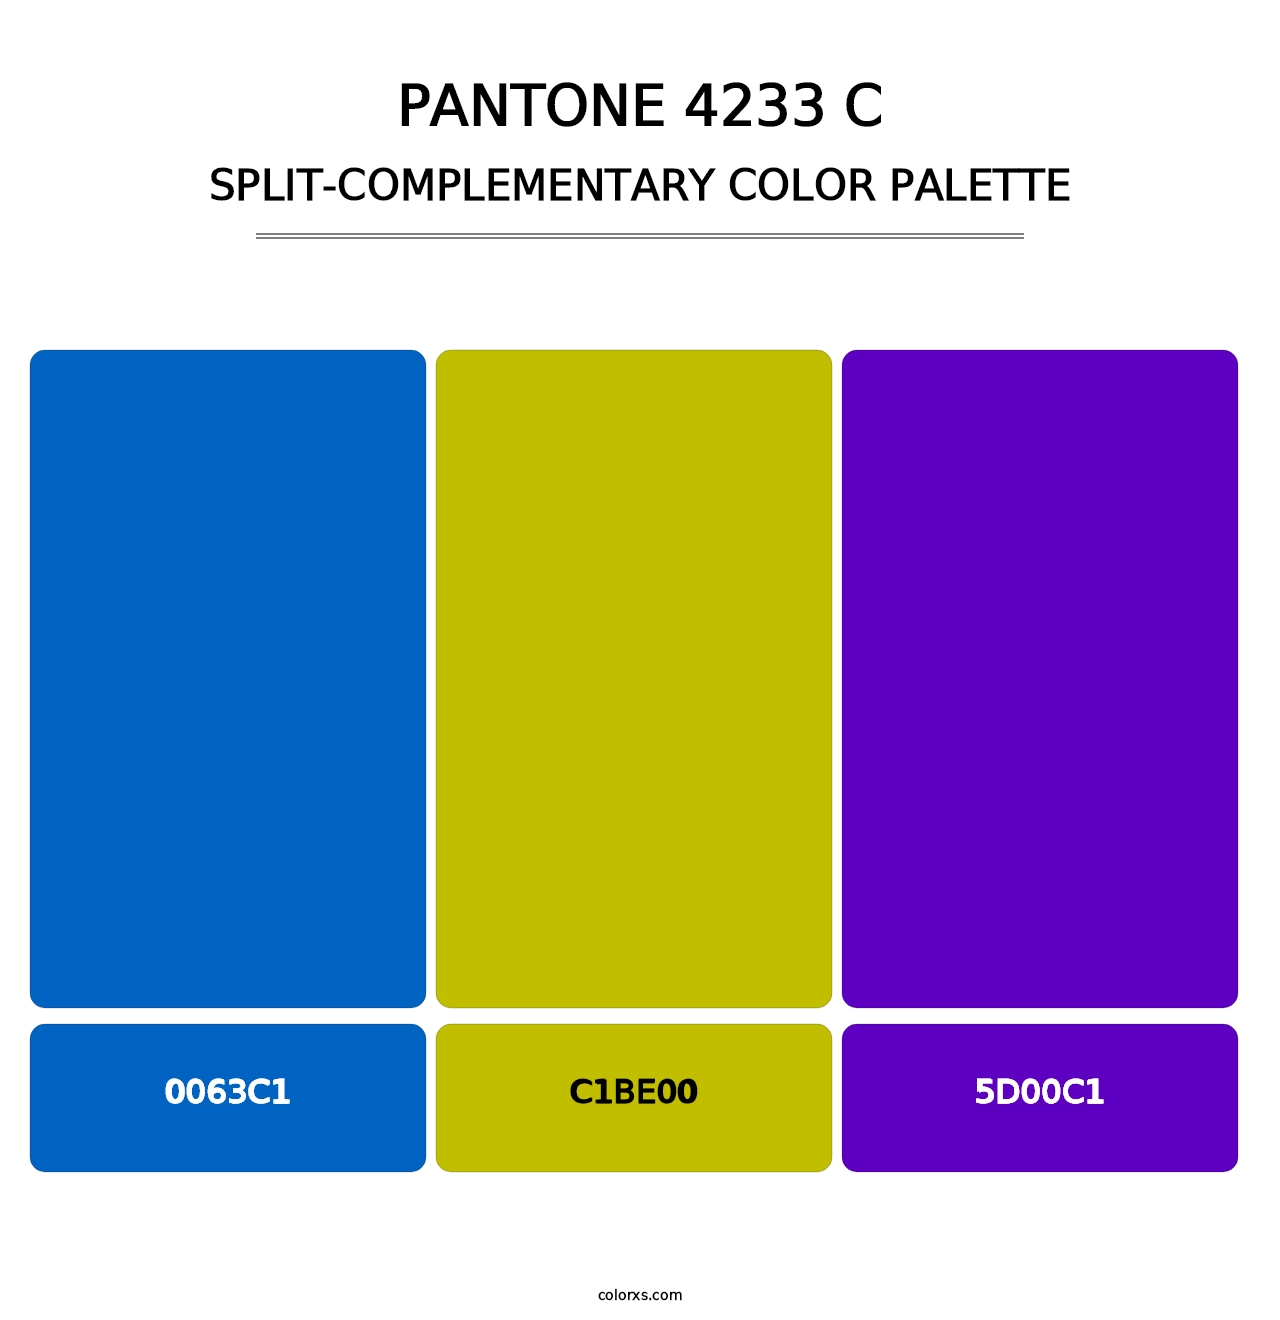 PANTONE 4233 C - Split-Complementary Color Palette